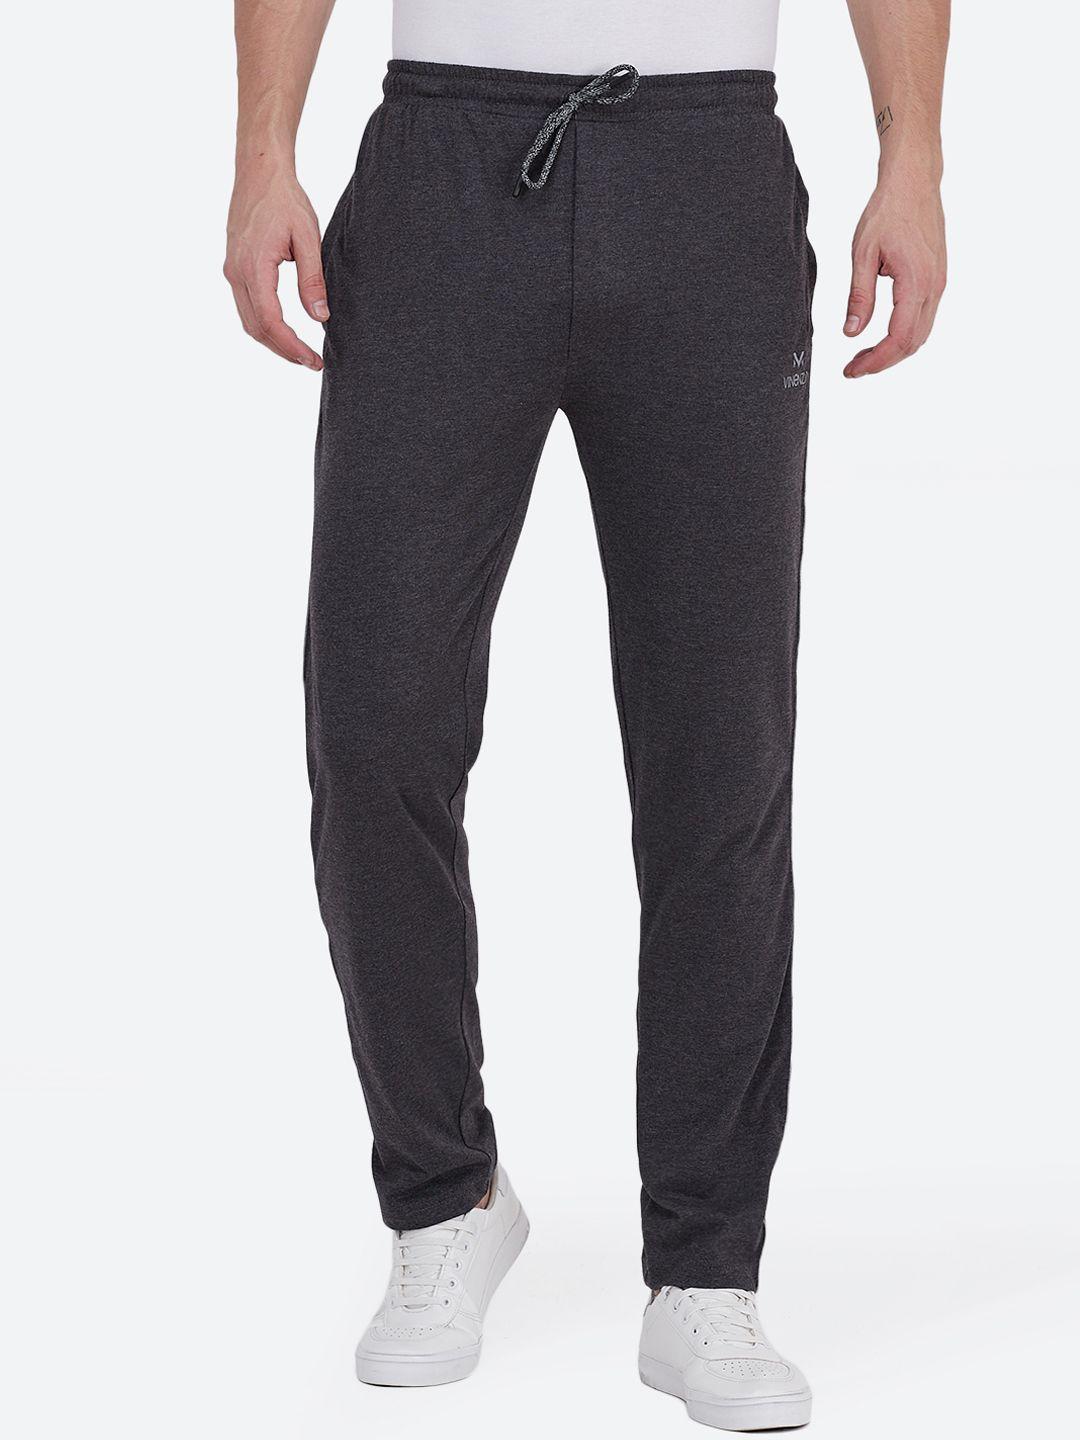 vinenzia-men-charcoal-grey-solid-slim-fit-track-pants